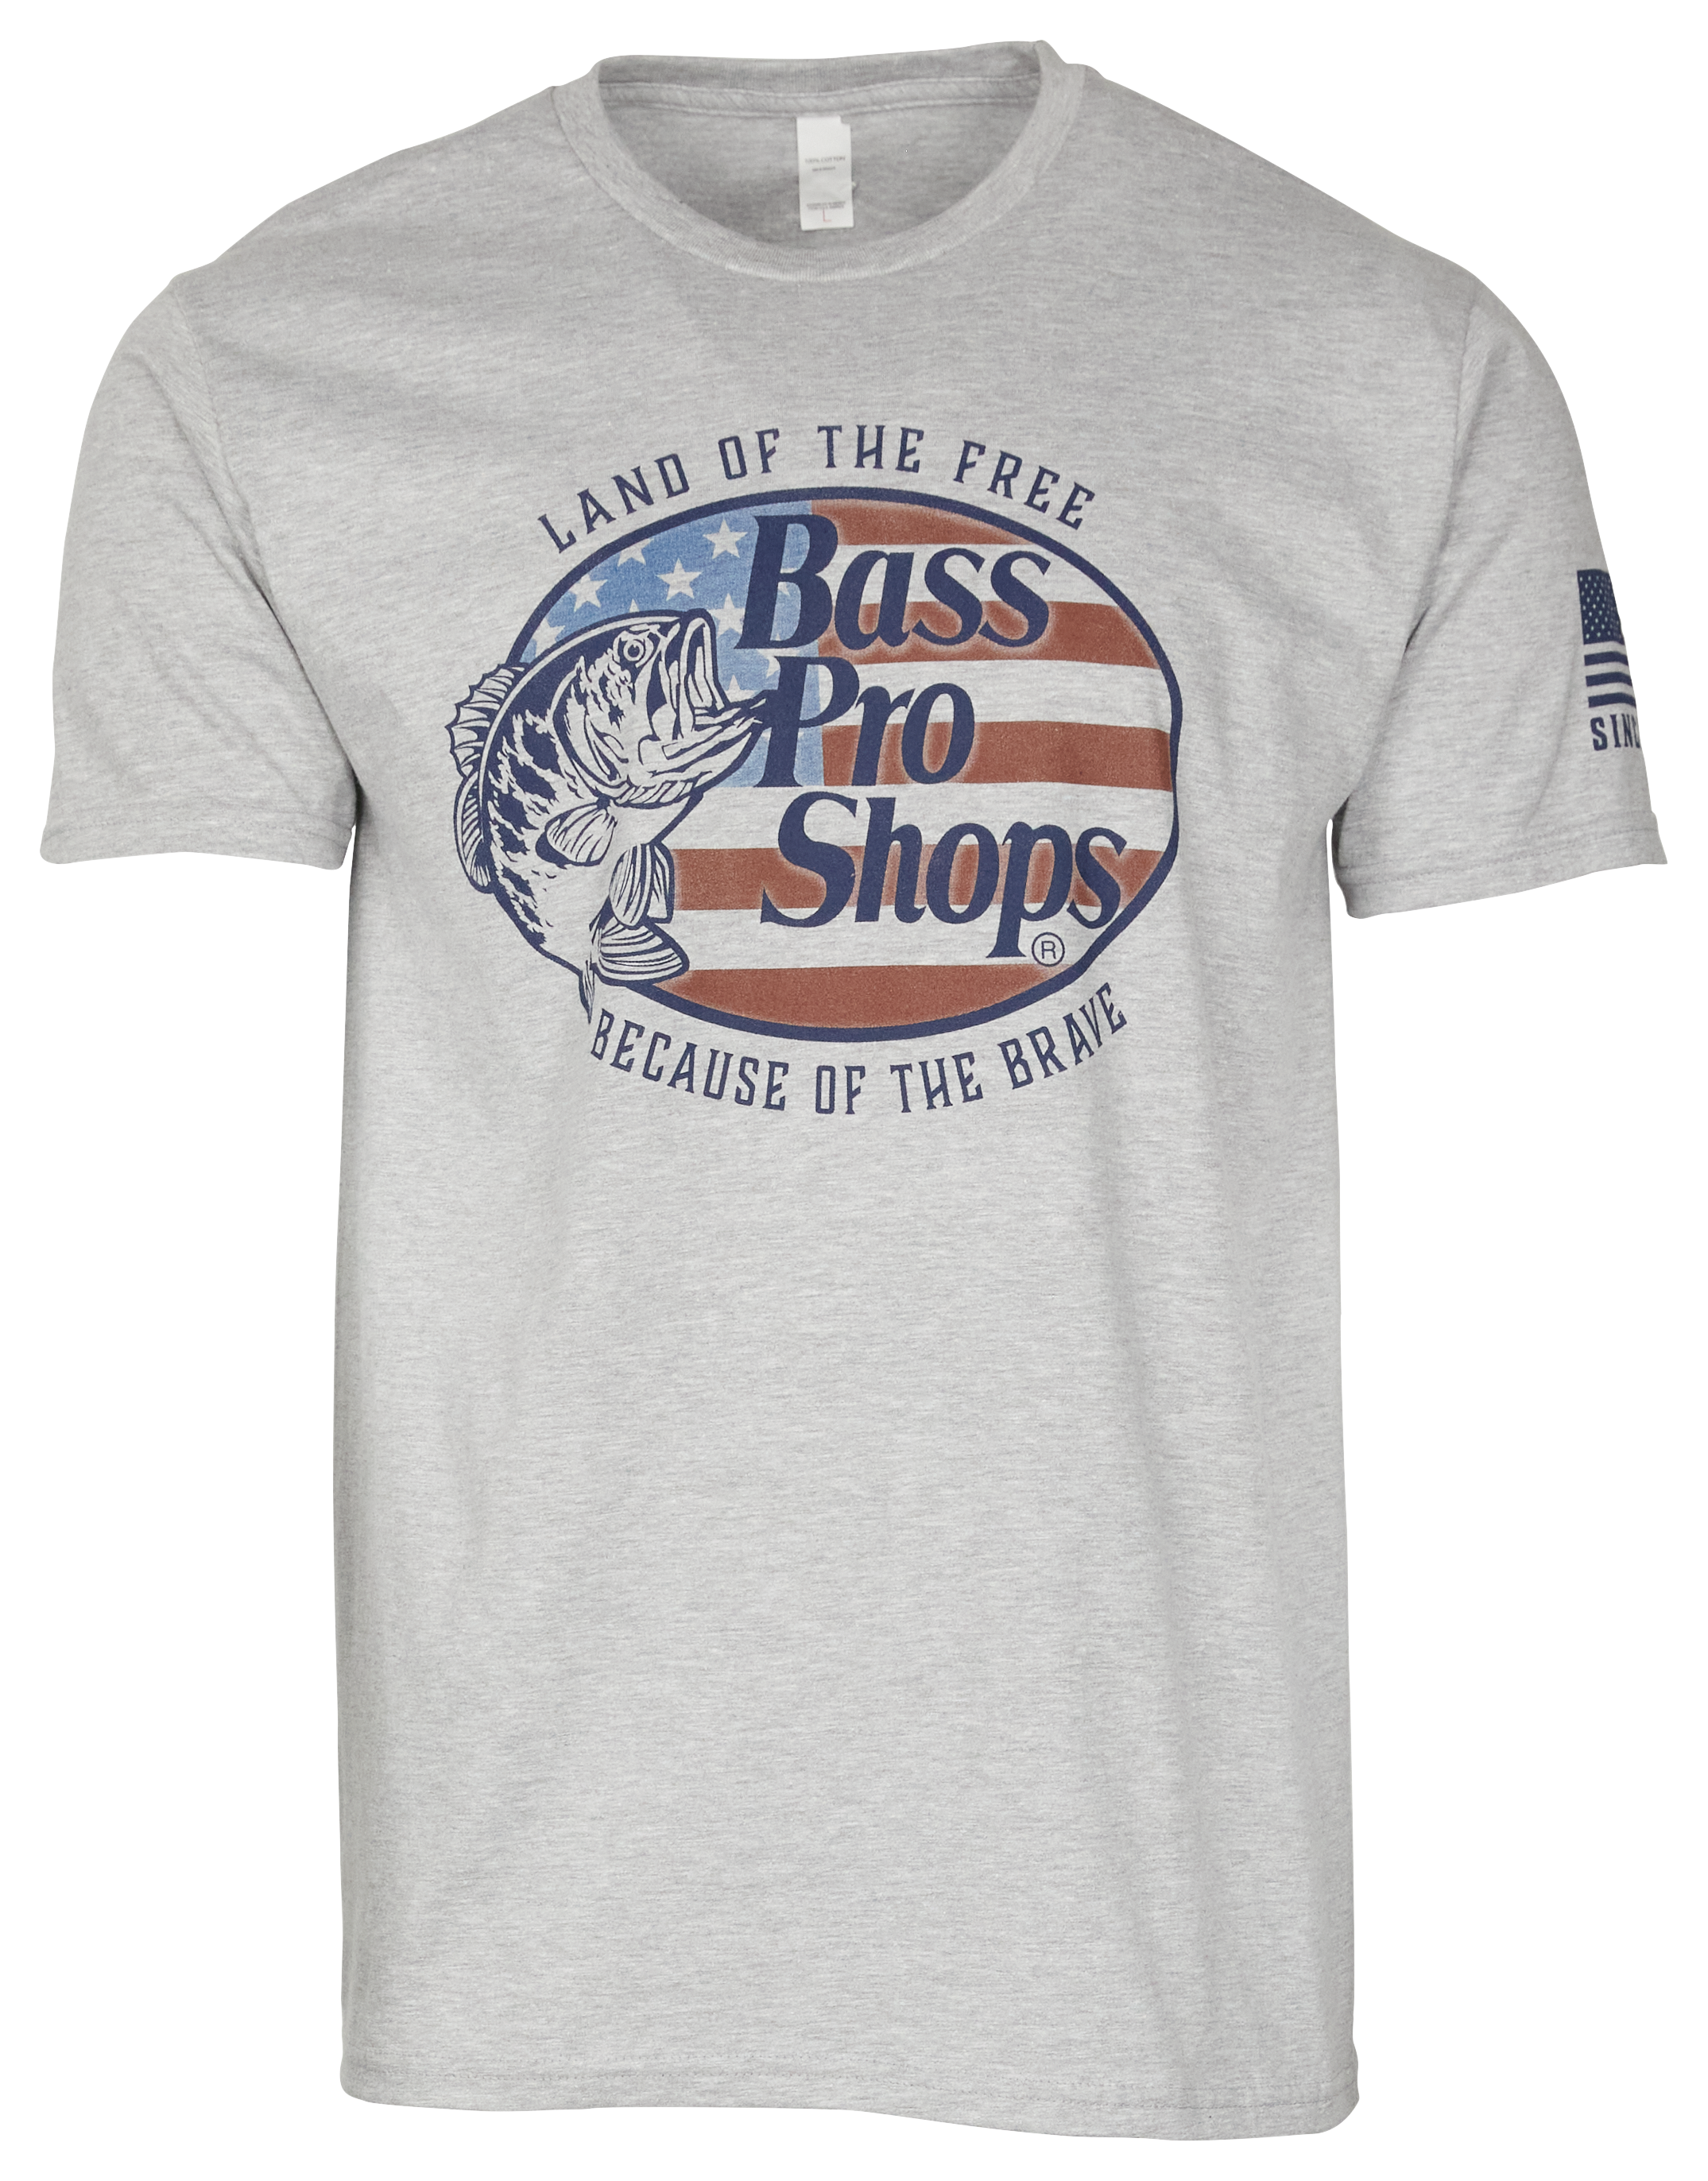  Bass Professional Shop Shirt